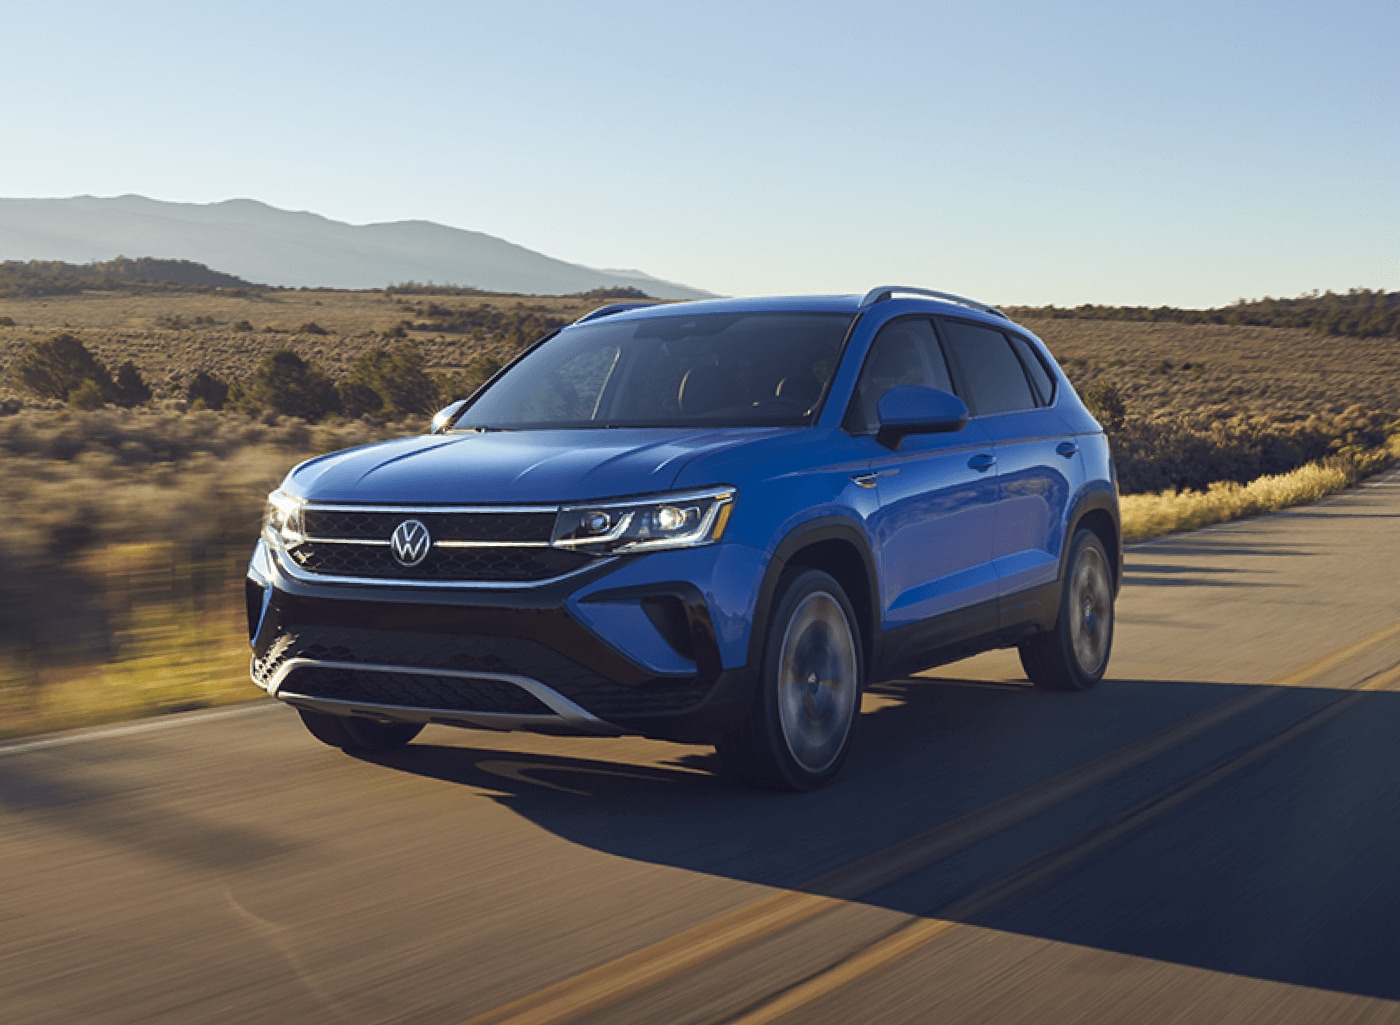 Volkswagen Taos Reliability